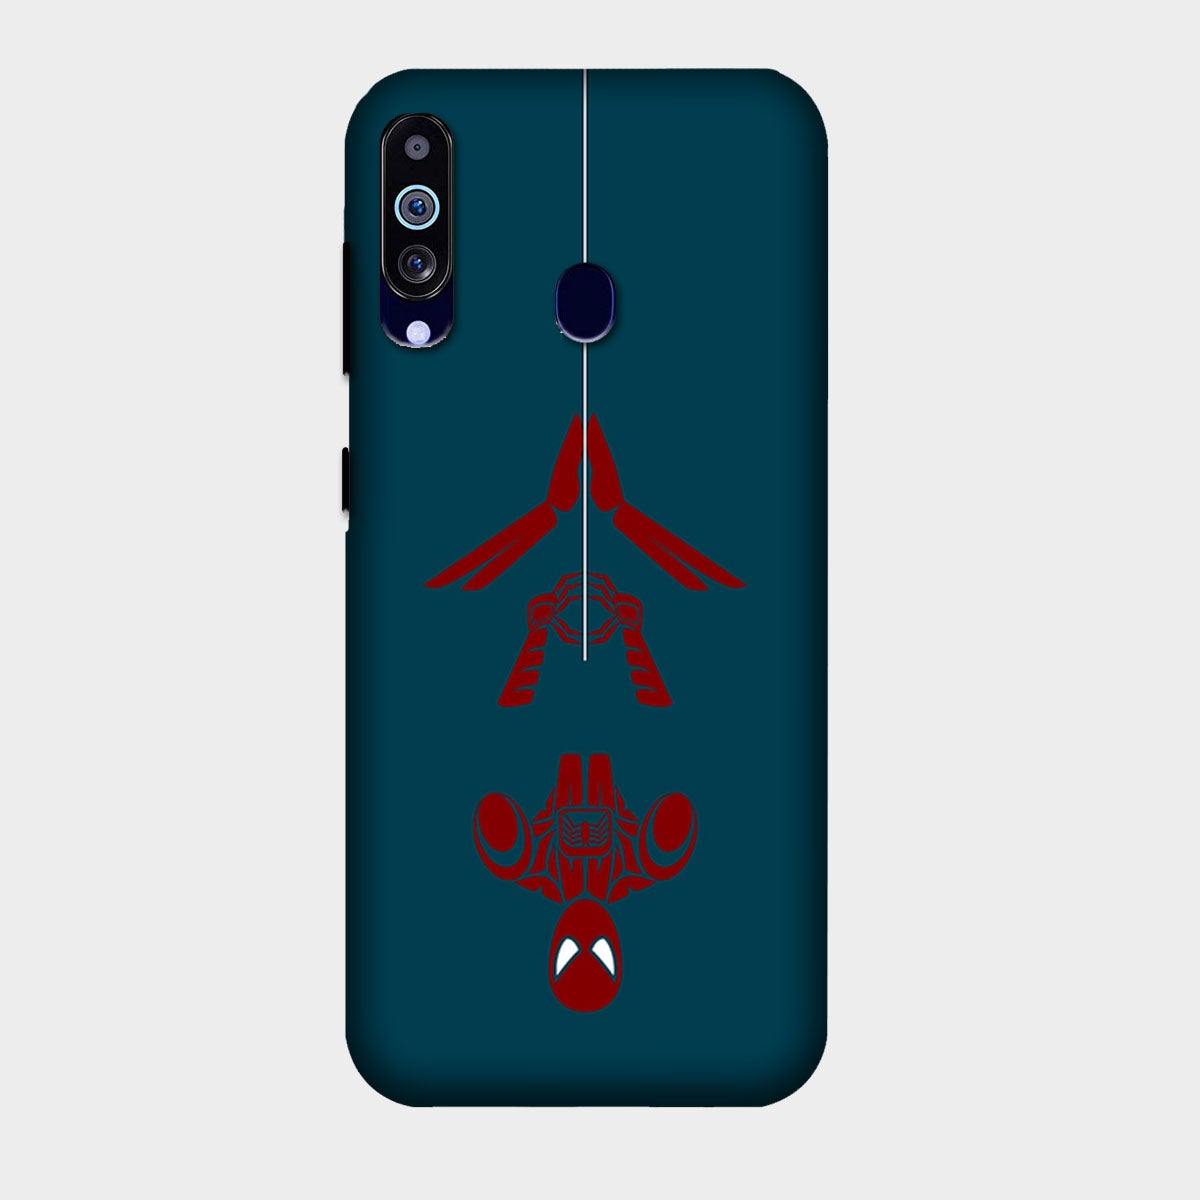 Spider Man - Upside - Mobile Phone Cover - Hard Case - Samsung - Samsung